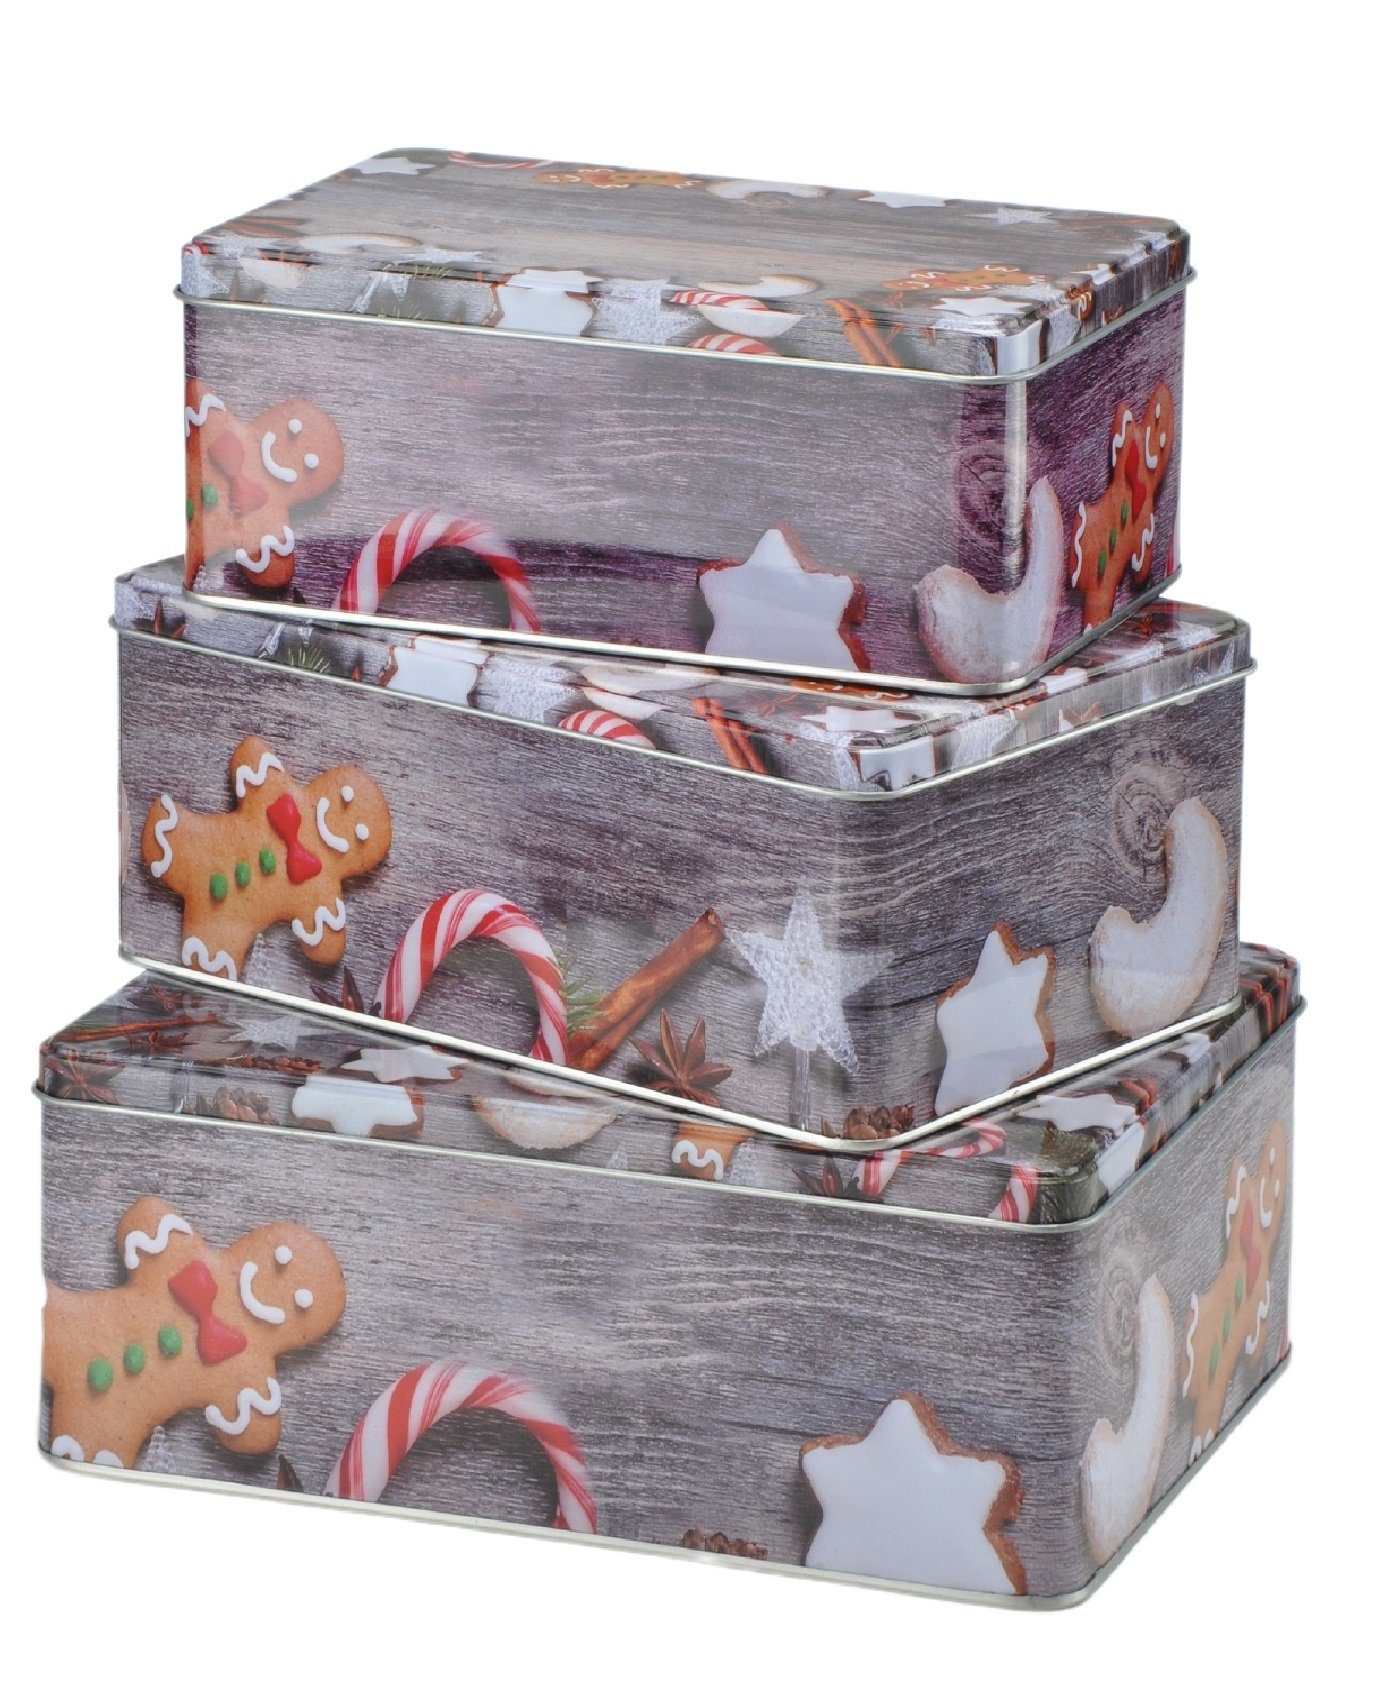 Beliebte Informationen zum Versandhandel Rungassi Keksdose Weihnachts-Keksdosen Plätzchendosen Set Grau Farbe: Dosen 3er rechteckig